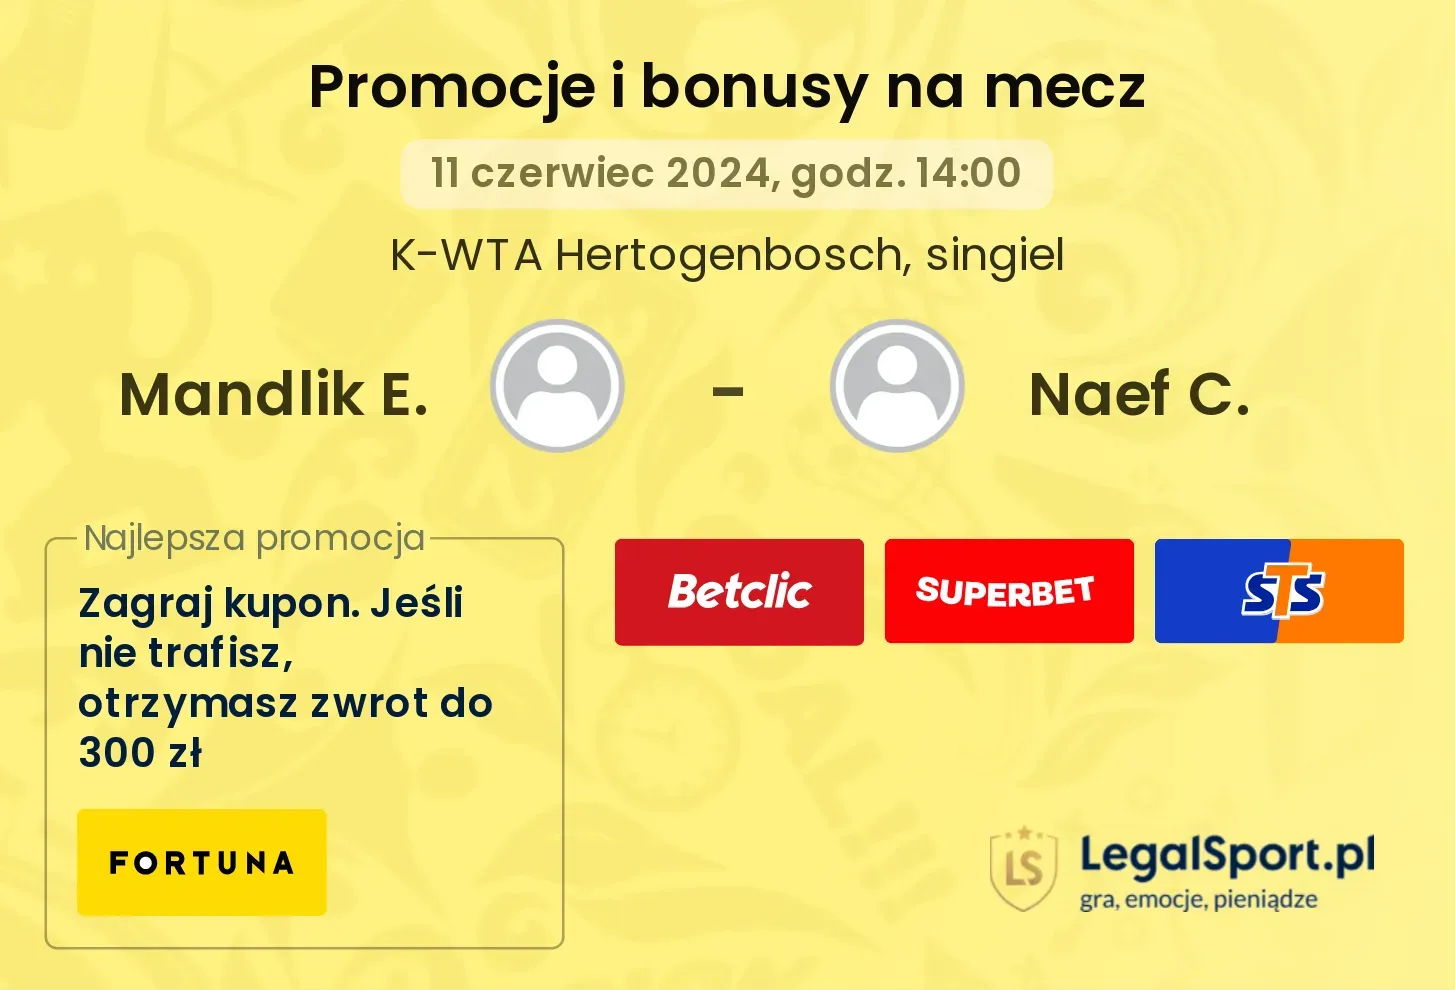 Mandlik E. - Naef C. promocje bonusy na mecz